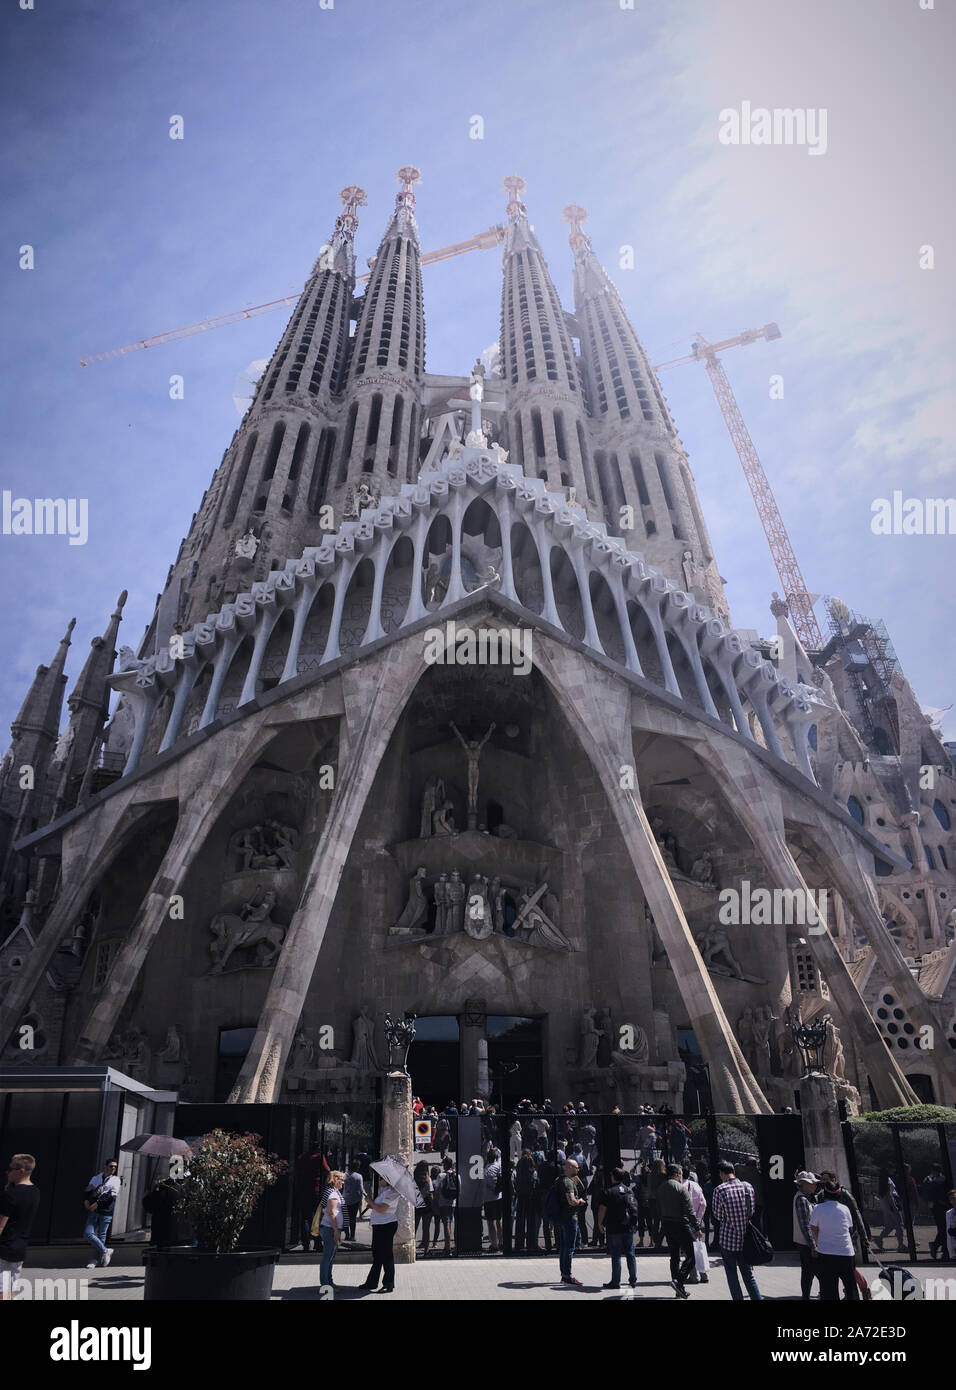 La façade de la passion ou la Fachada de la Passión de la Basílica de la Sagrada Família fait partie d'un site classé au patrimoine mondial de l'UNESCO. Par L'Architecte Antoni Gaudí Banque D'Images